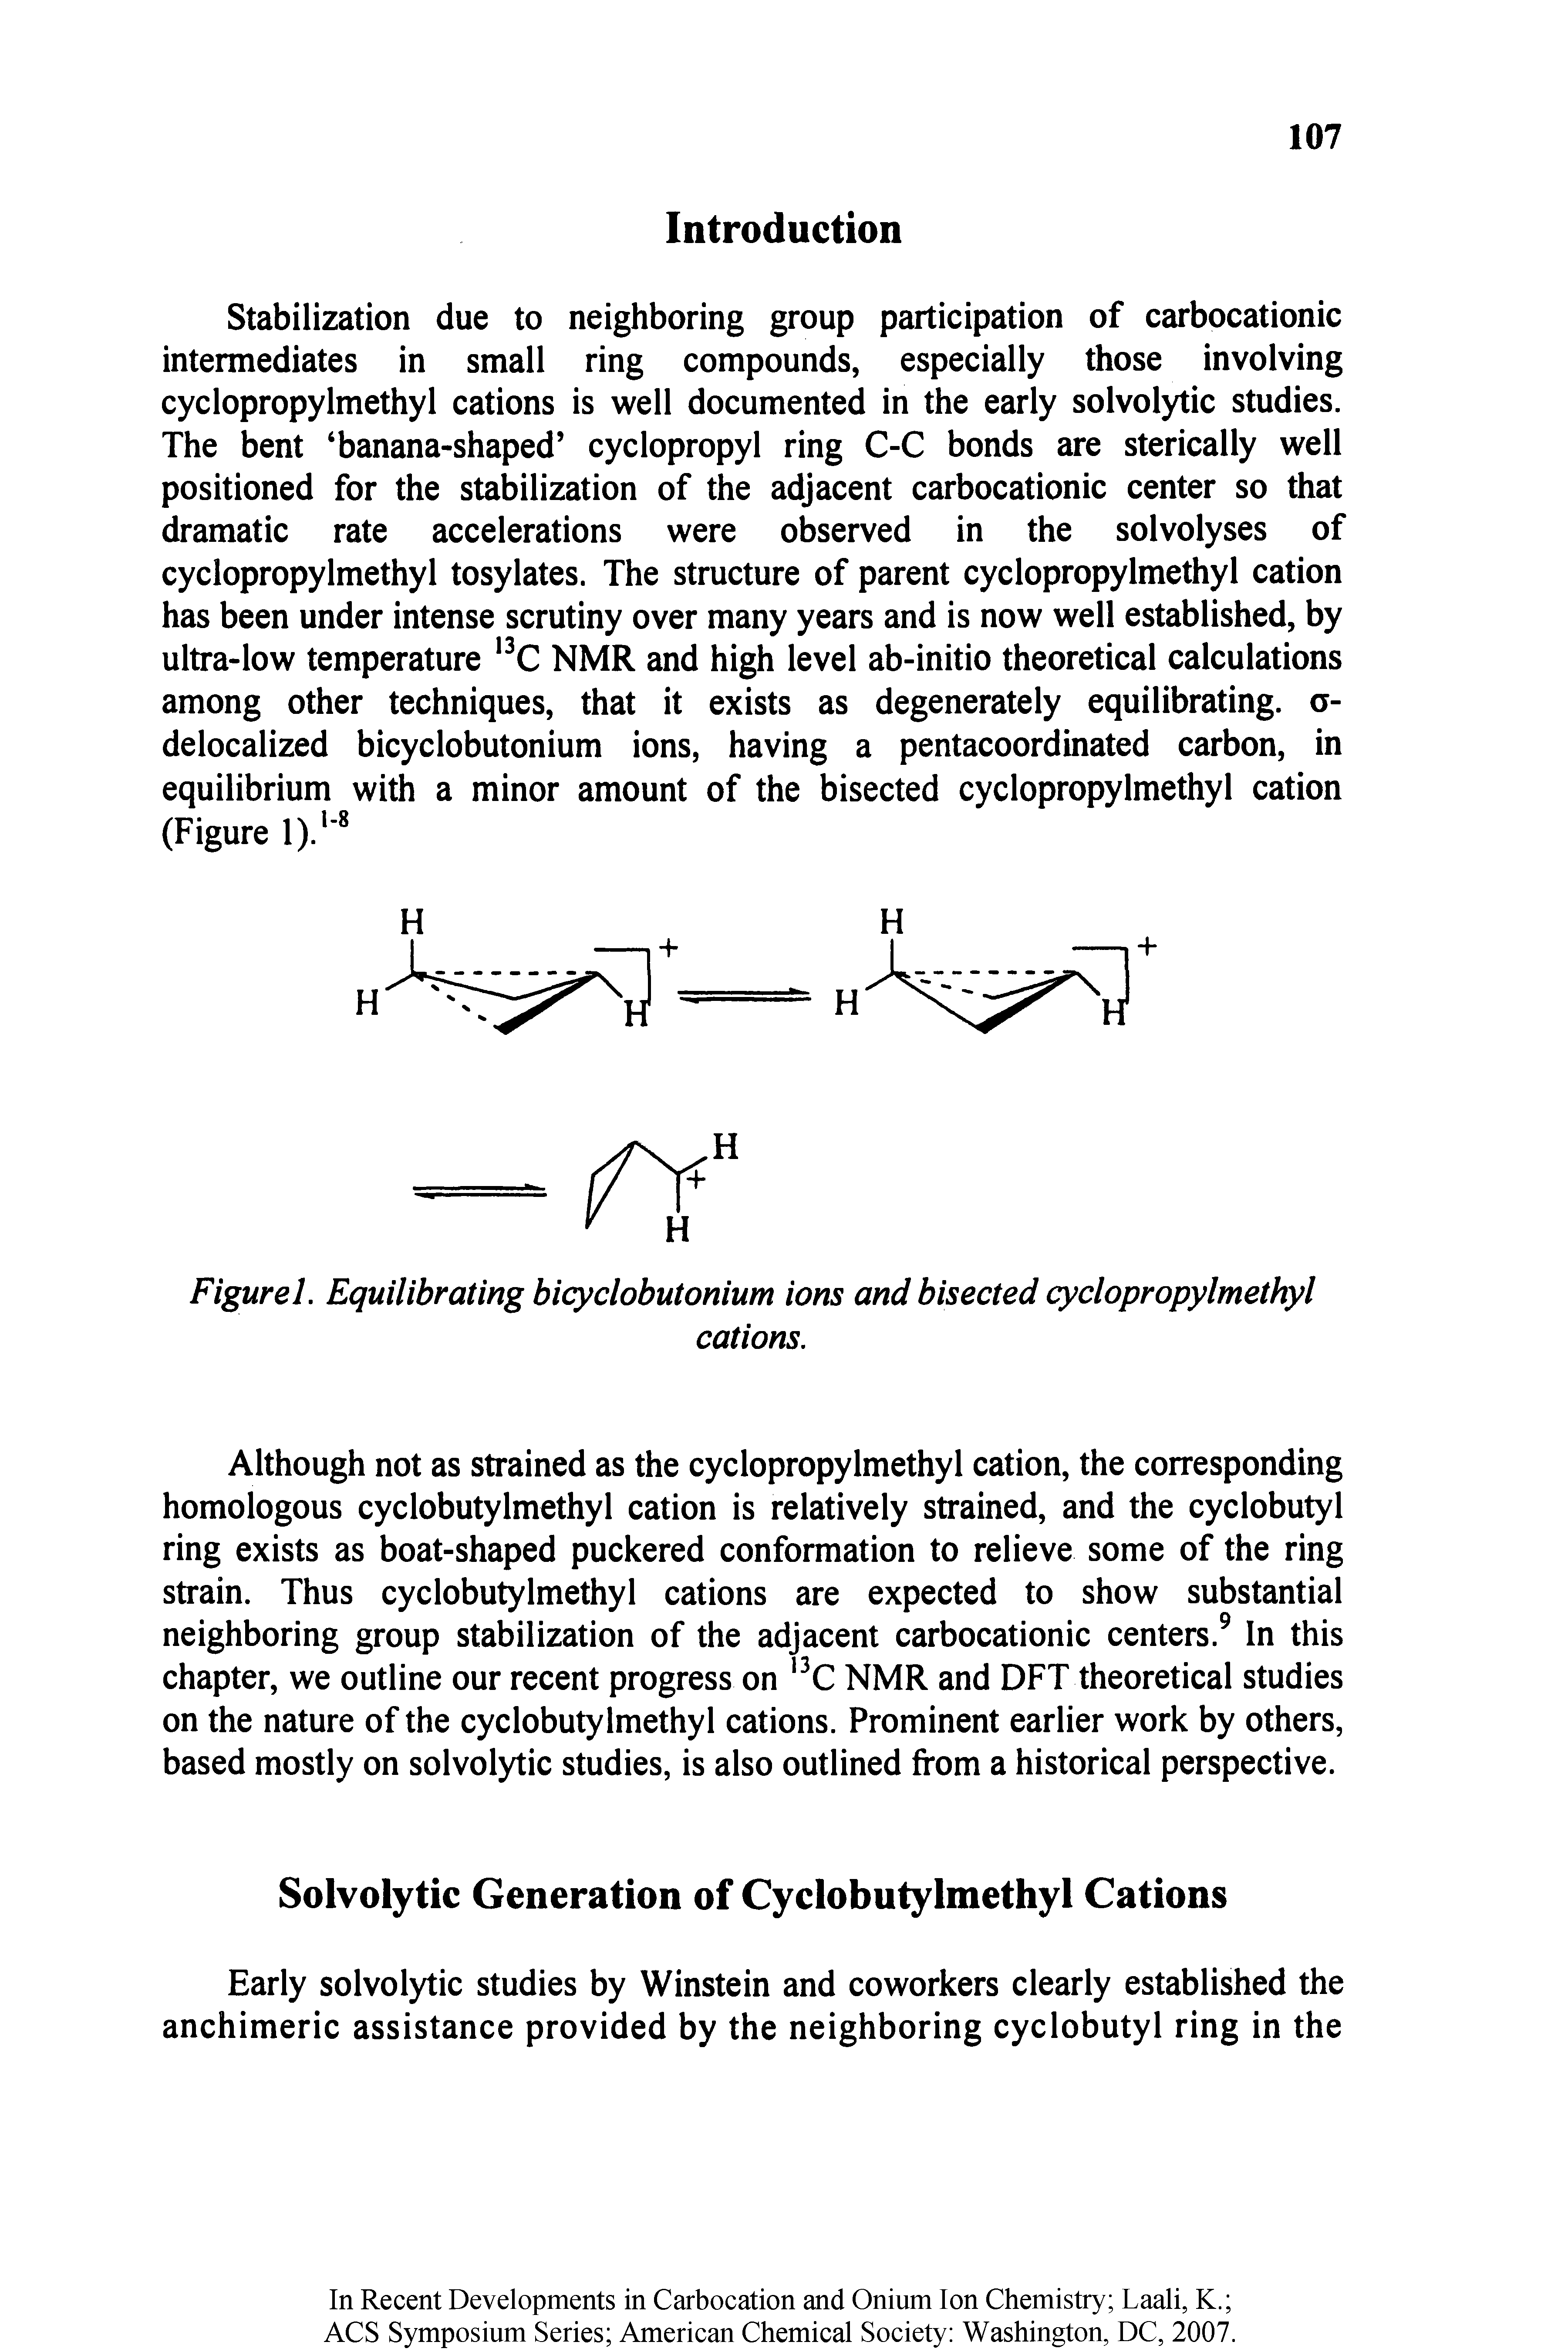 Figurel. Equilibrating bicyclobutonium ions and bisected cyclopropylmethyl...